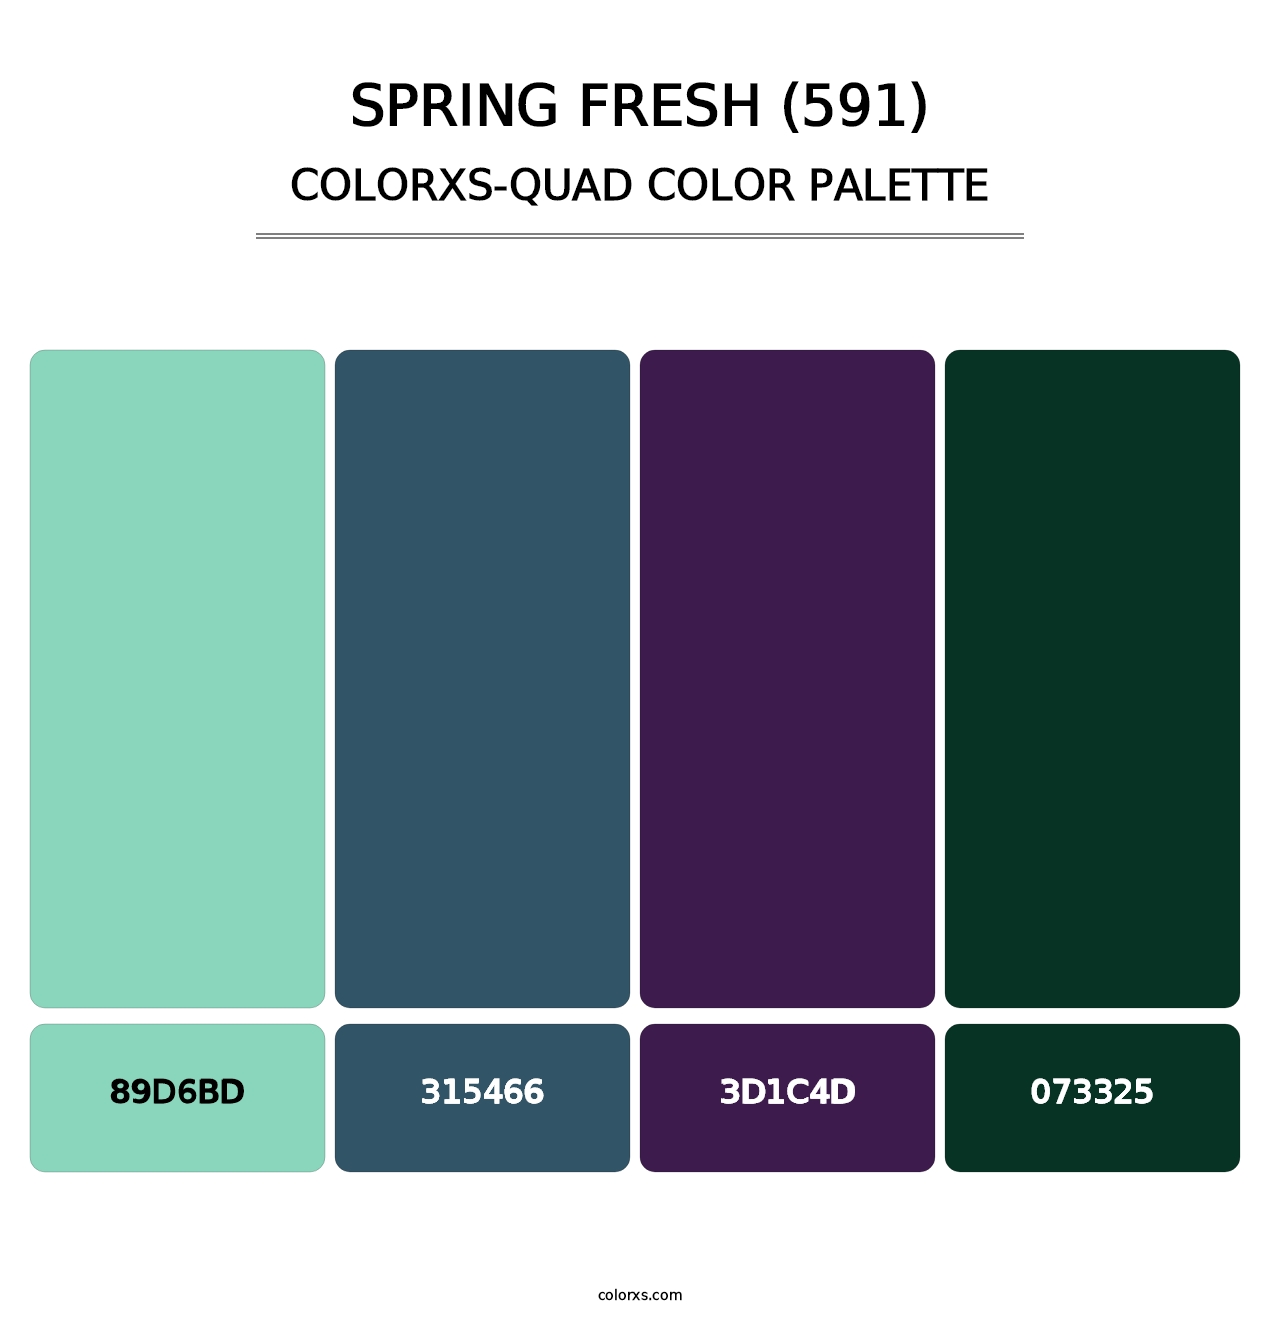 Spring Fresh (591) - Colorxs Quad Palette